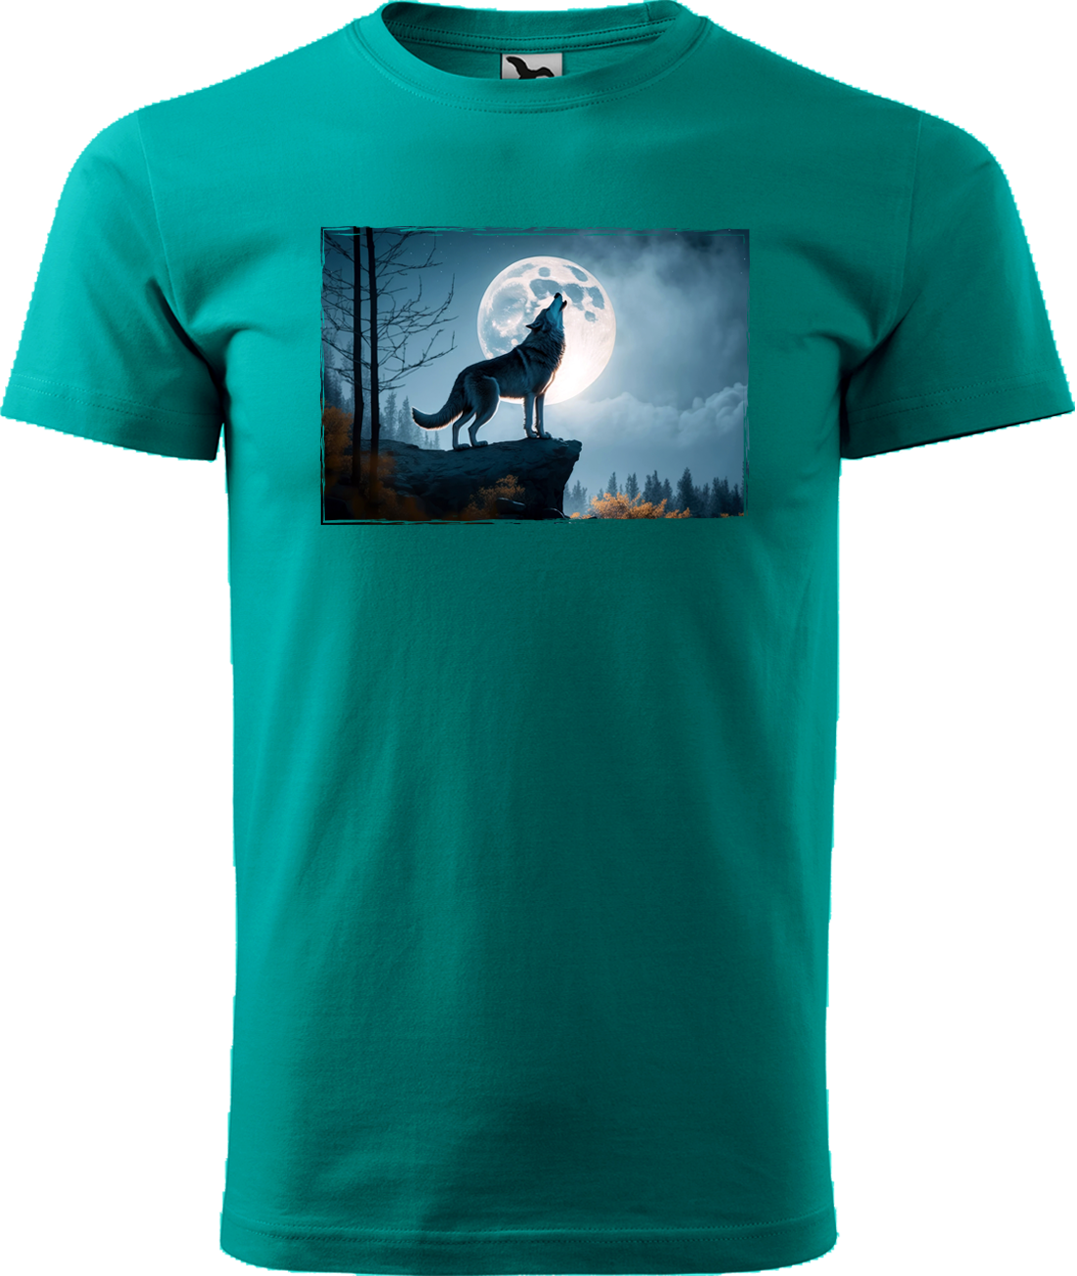 Pánské tričko s vlkem - Vyjící vlk Velikost: S, Barva: Emerald (19)